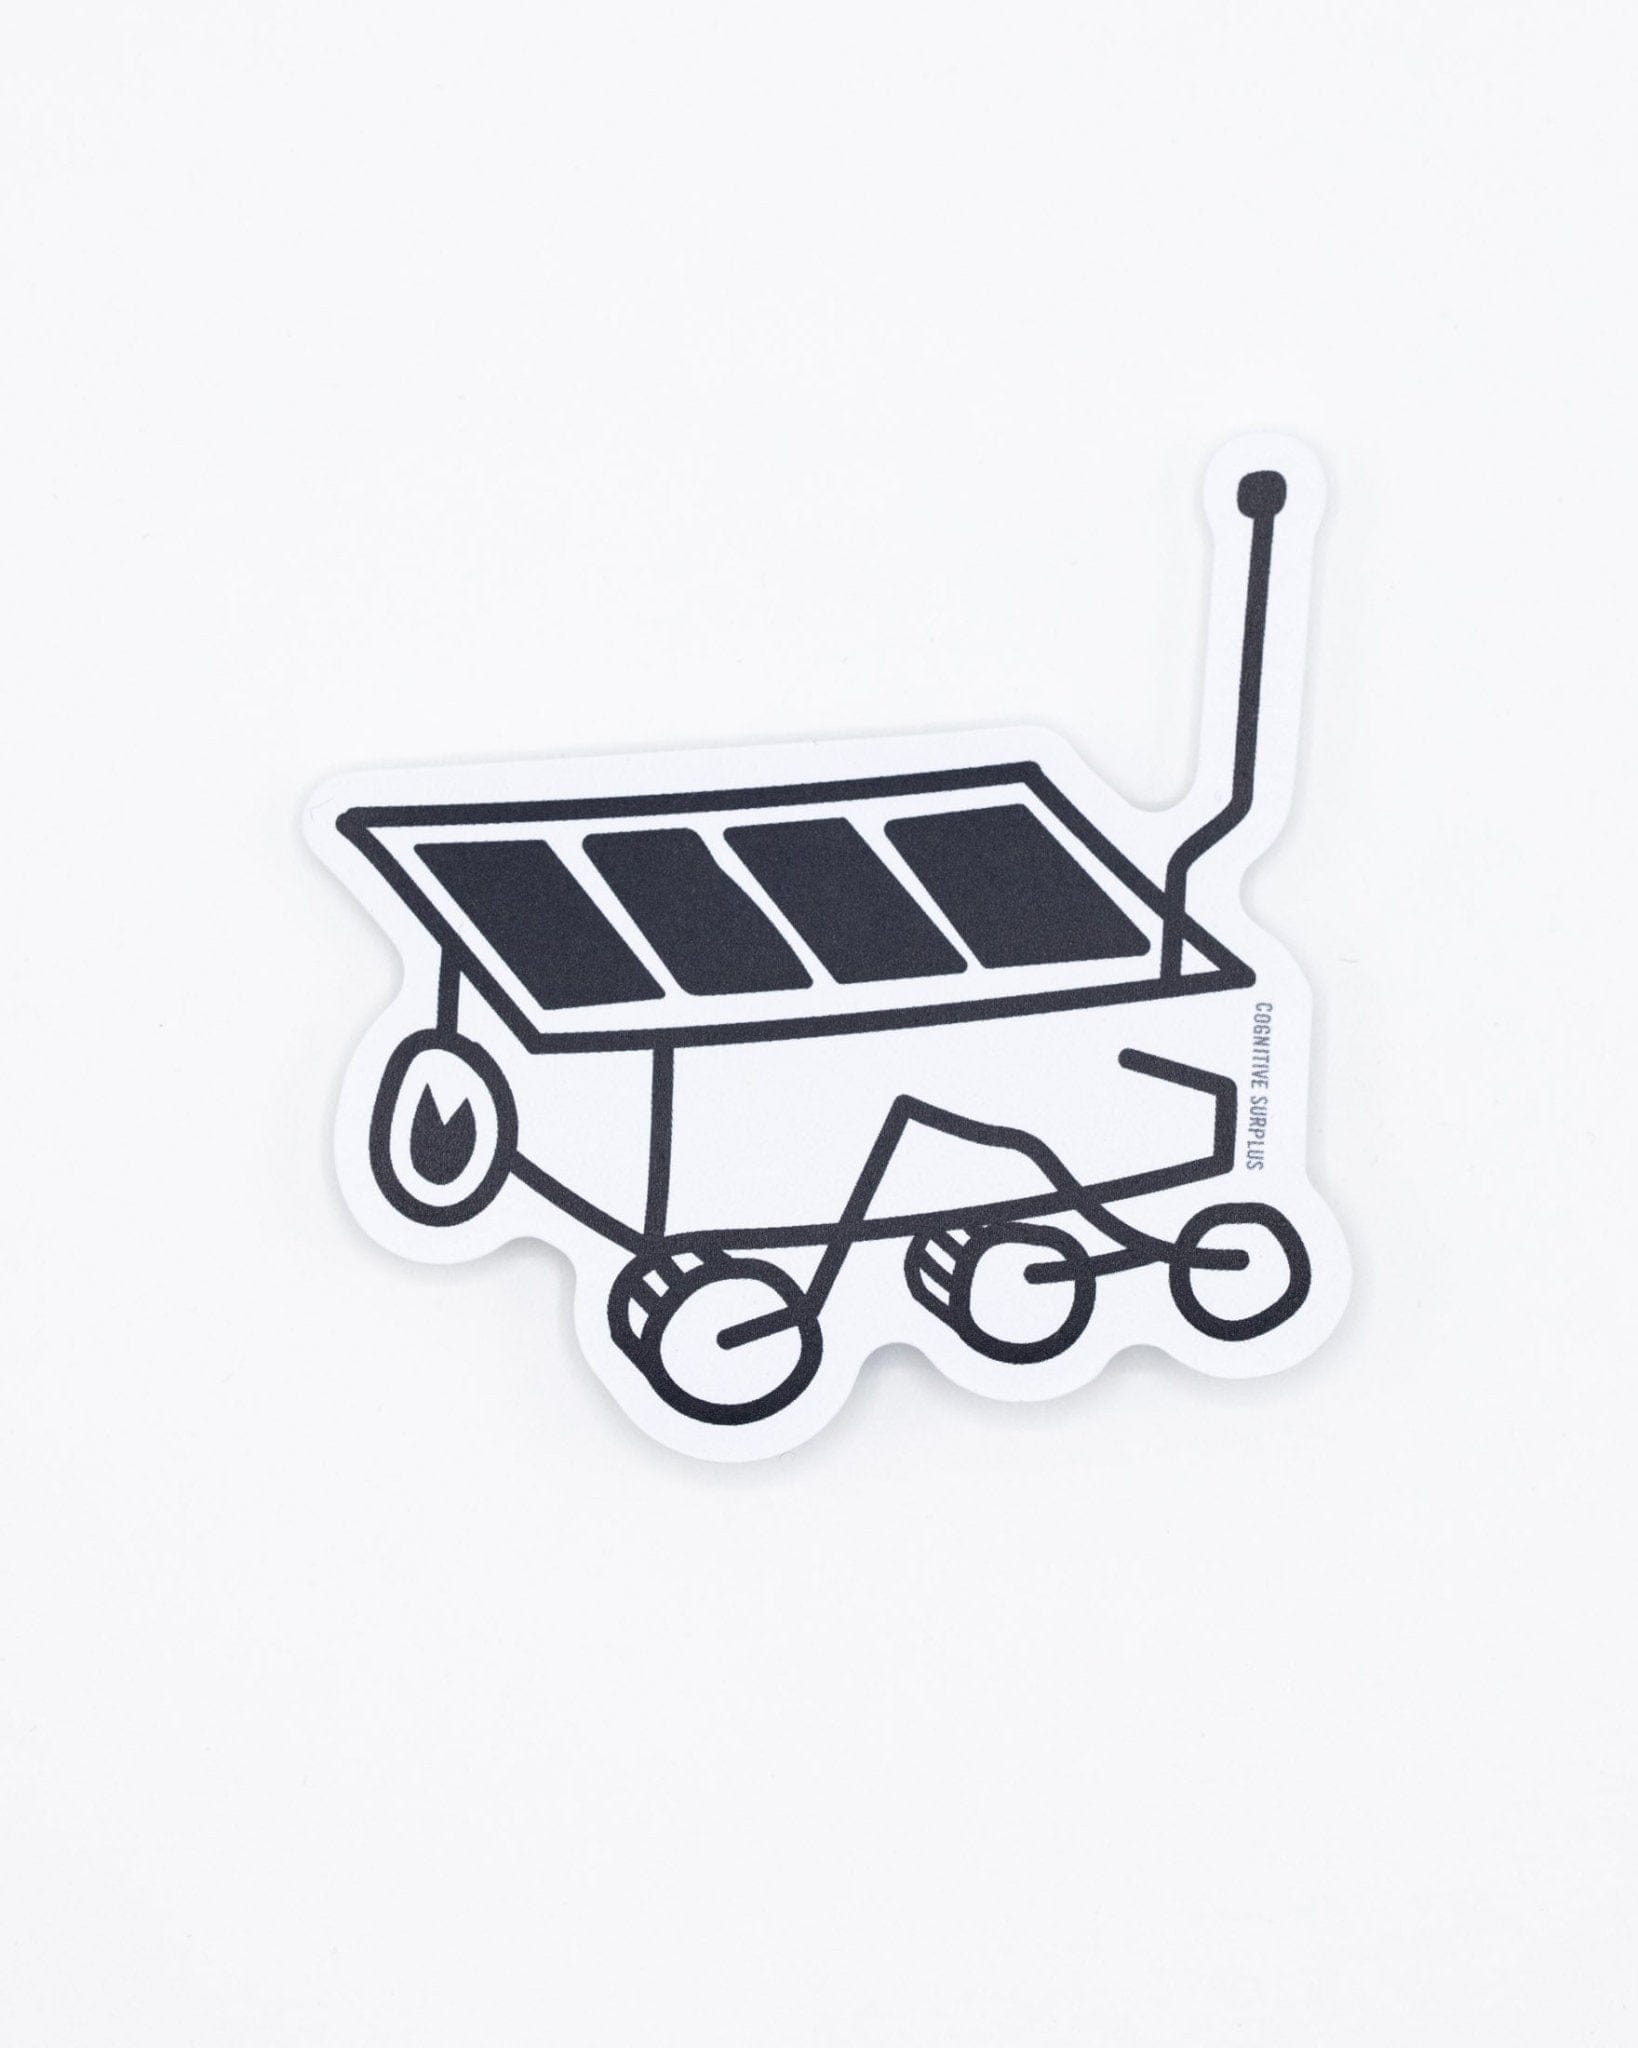 Sojourner Mars Rover Doodle Sticker Cognitive Surplus